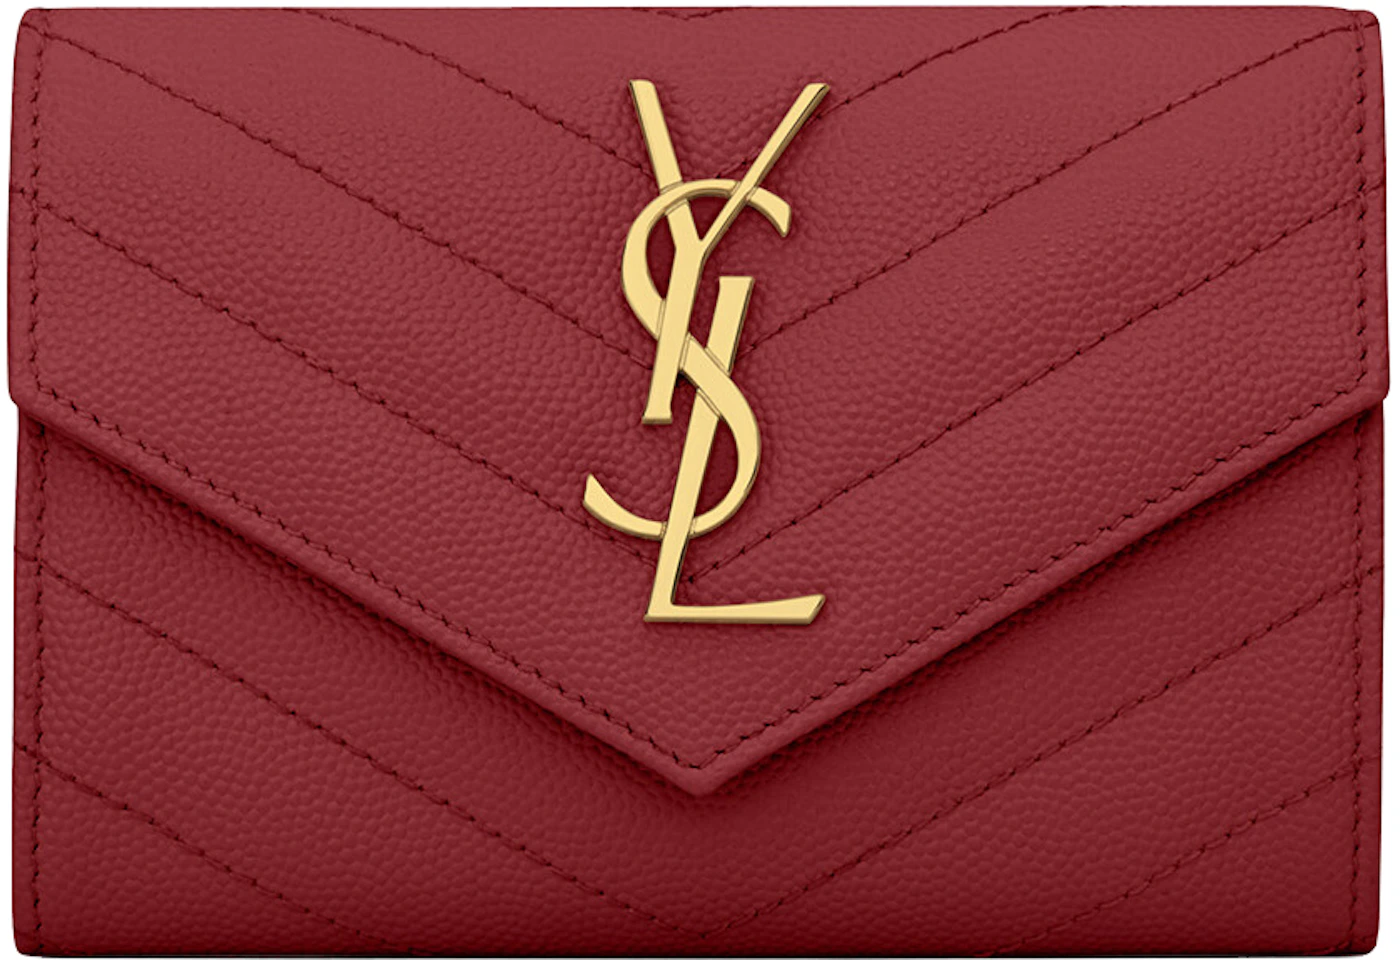 Saint Laurent Paris Red Matelasse Leather Large Cassandre Flap Bag